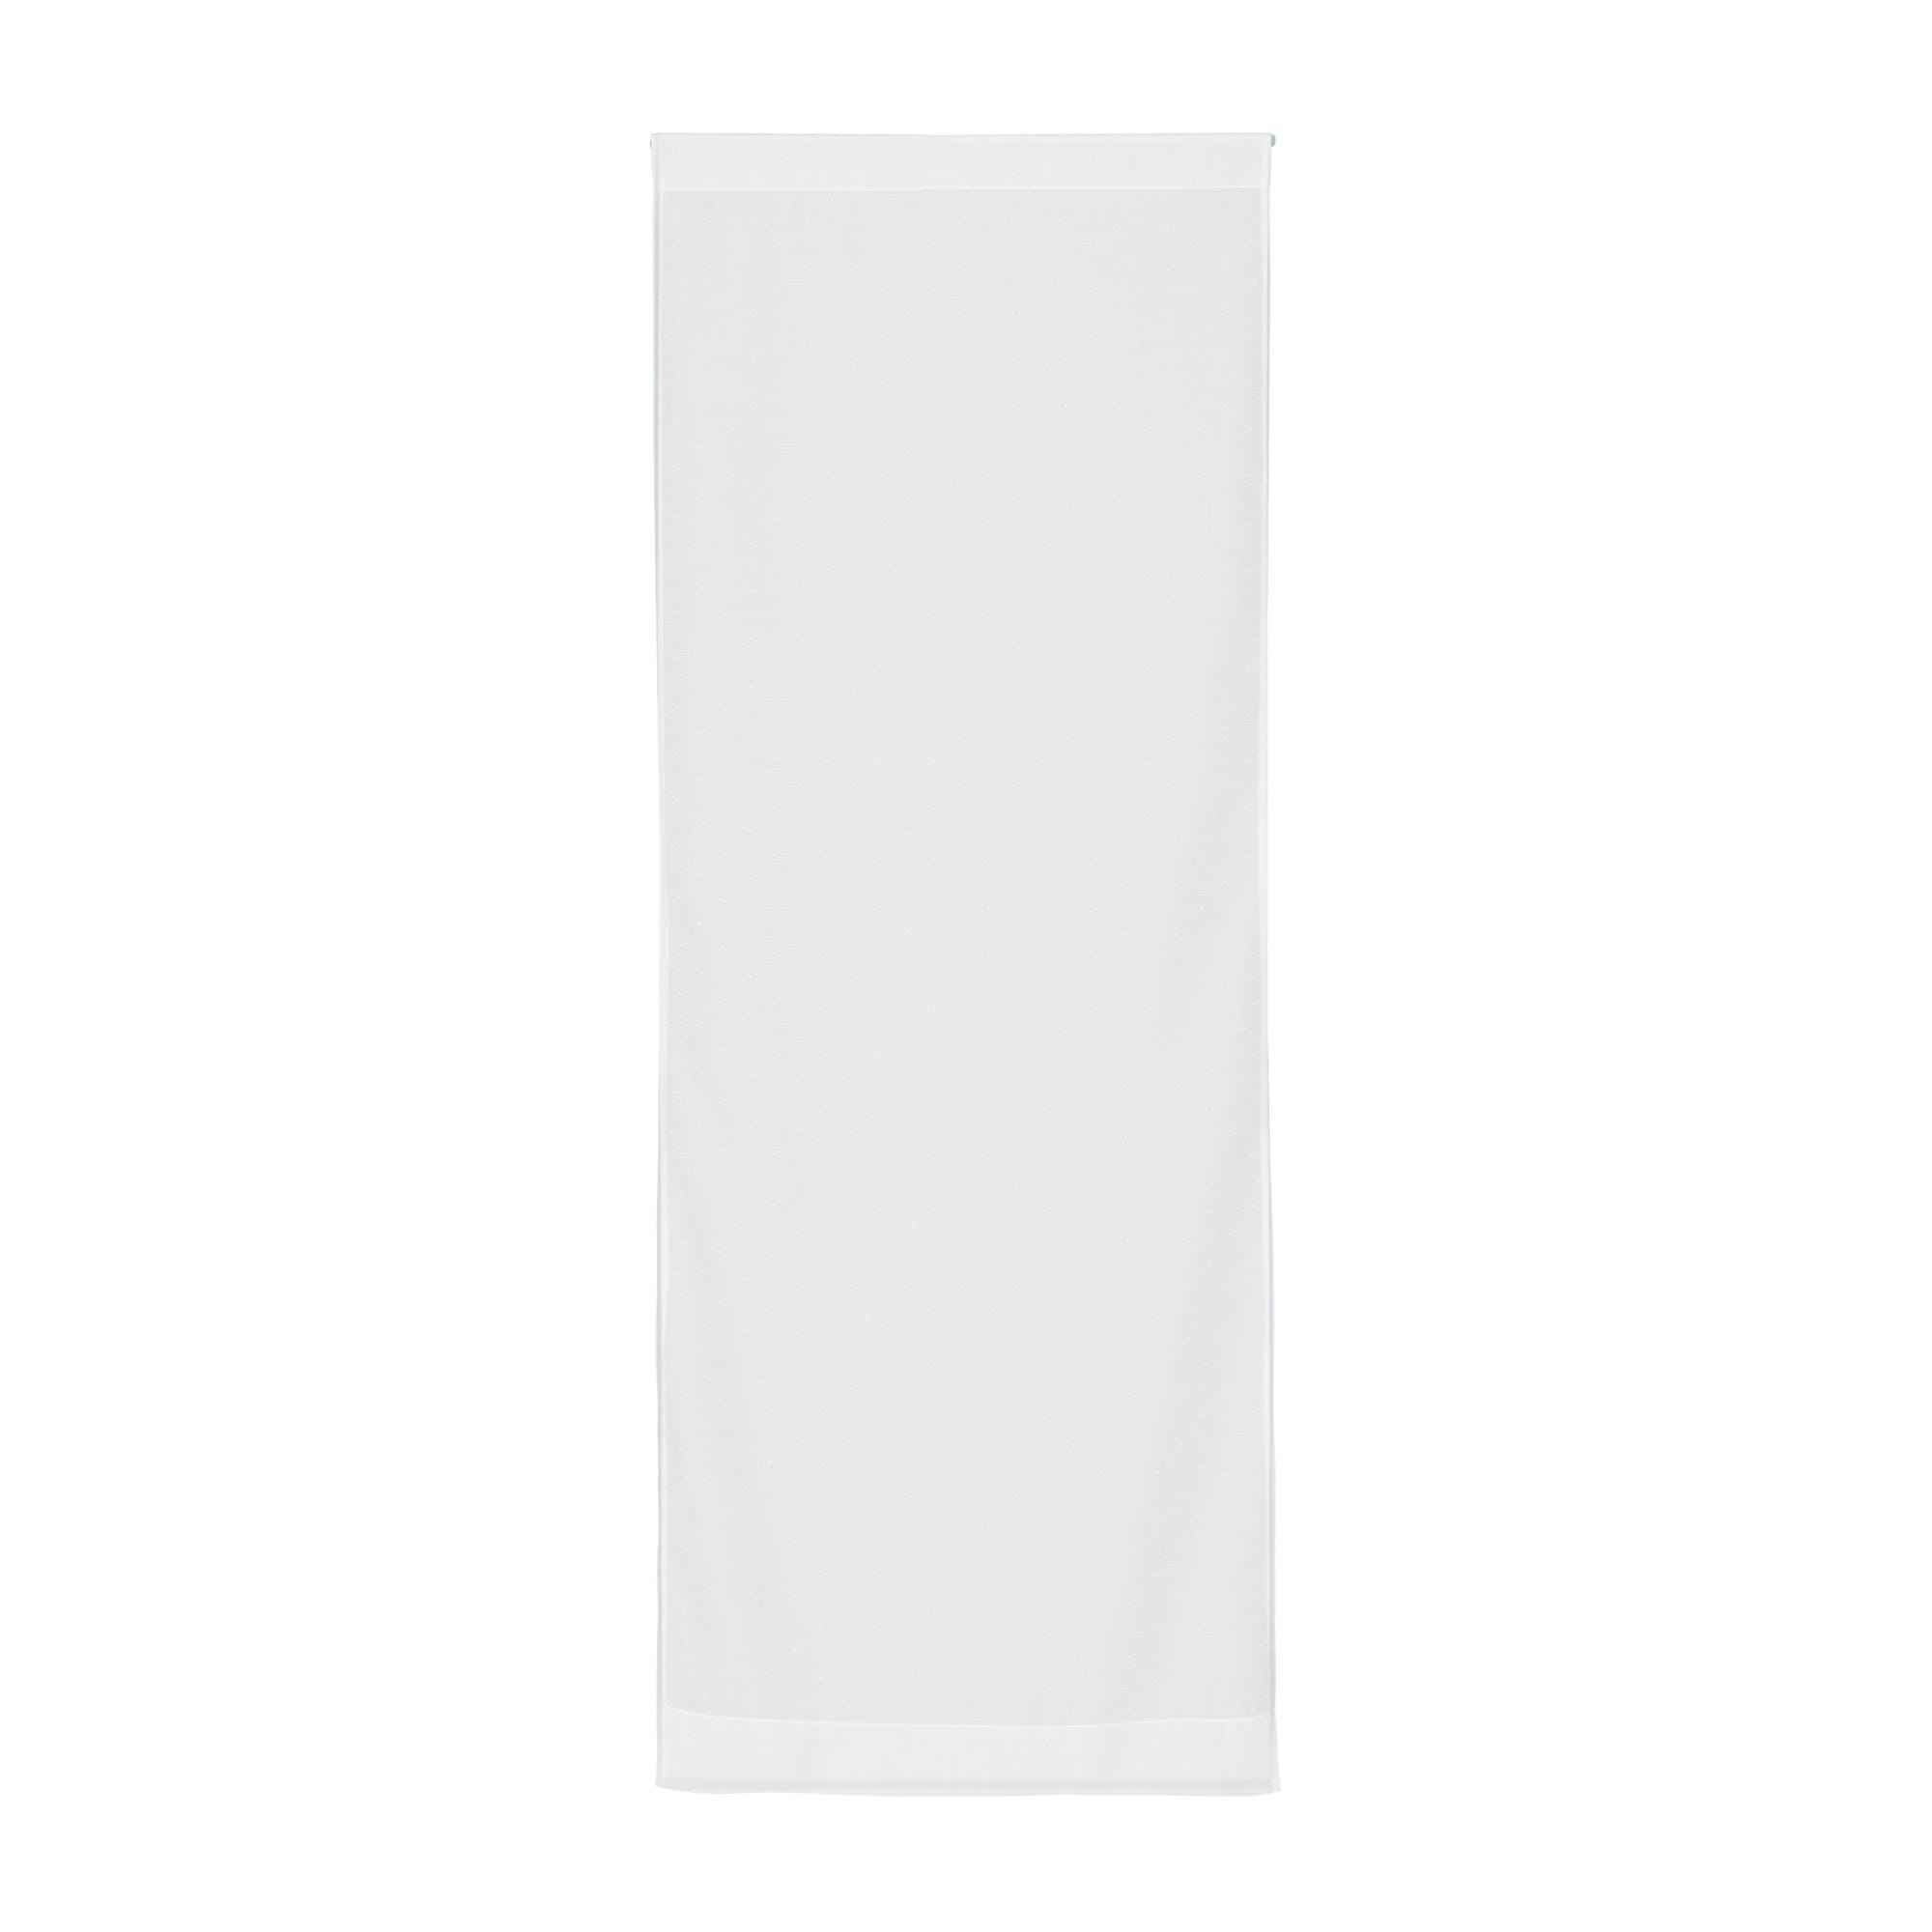 Tendina a vetro filtrante Picasso bianco tunnel 58x170 cm